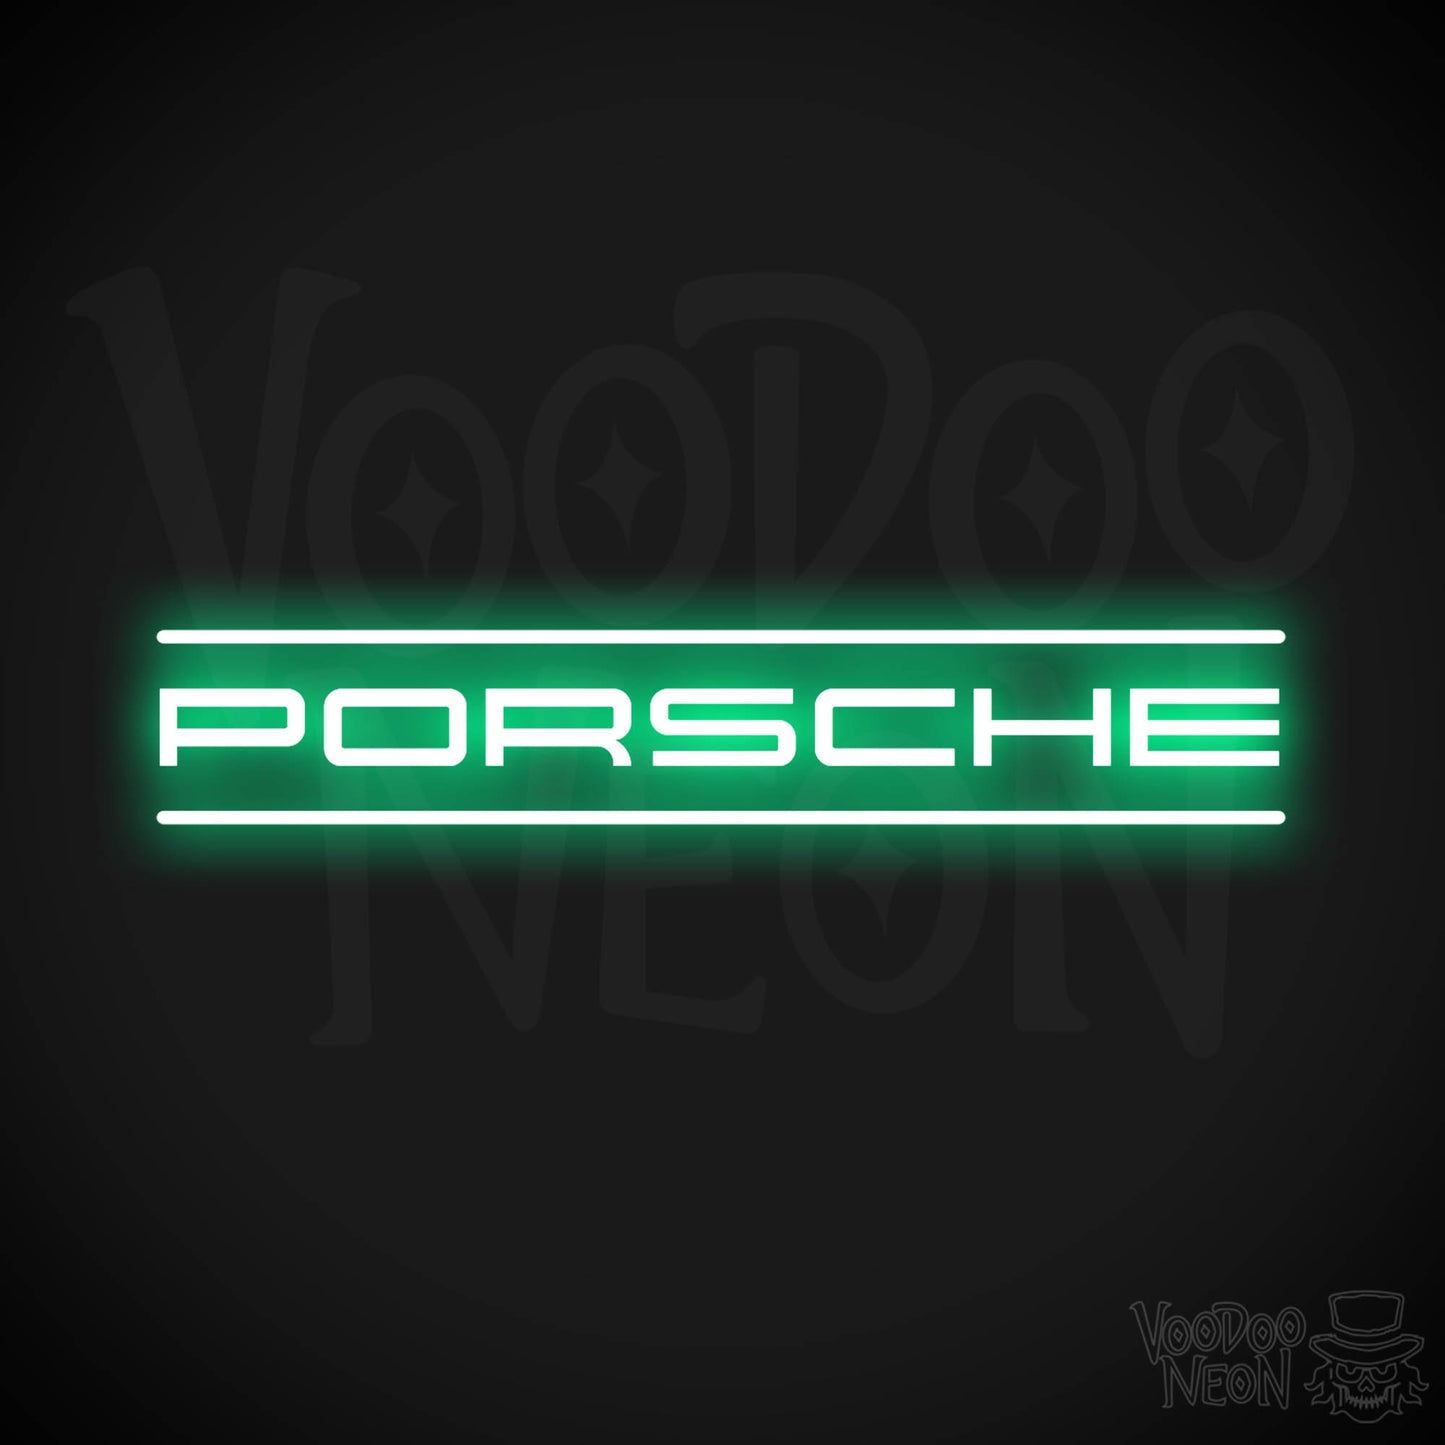 Porsche Neon Sign - Porsche Sign - Porsche Decor - Wall Art - Color Green